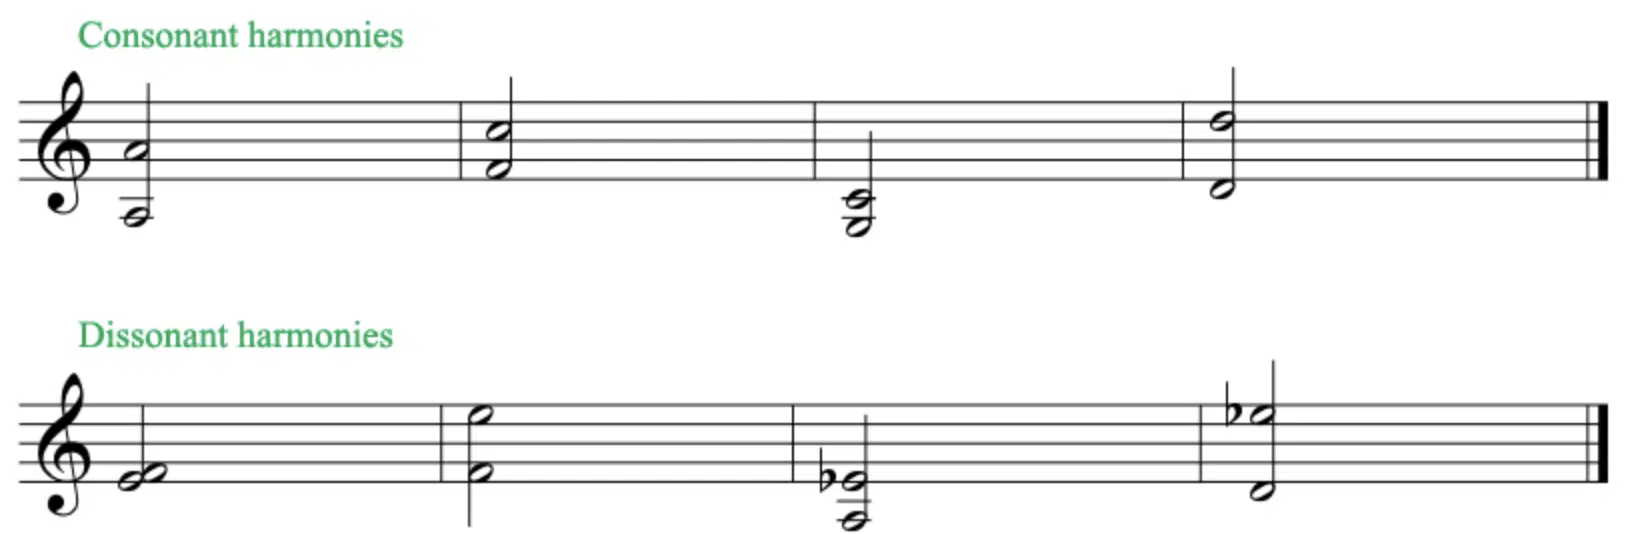 Consonant Dissonant Harmonies - Unison